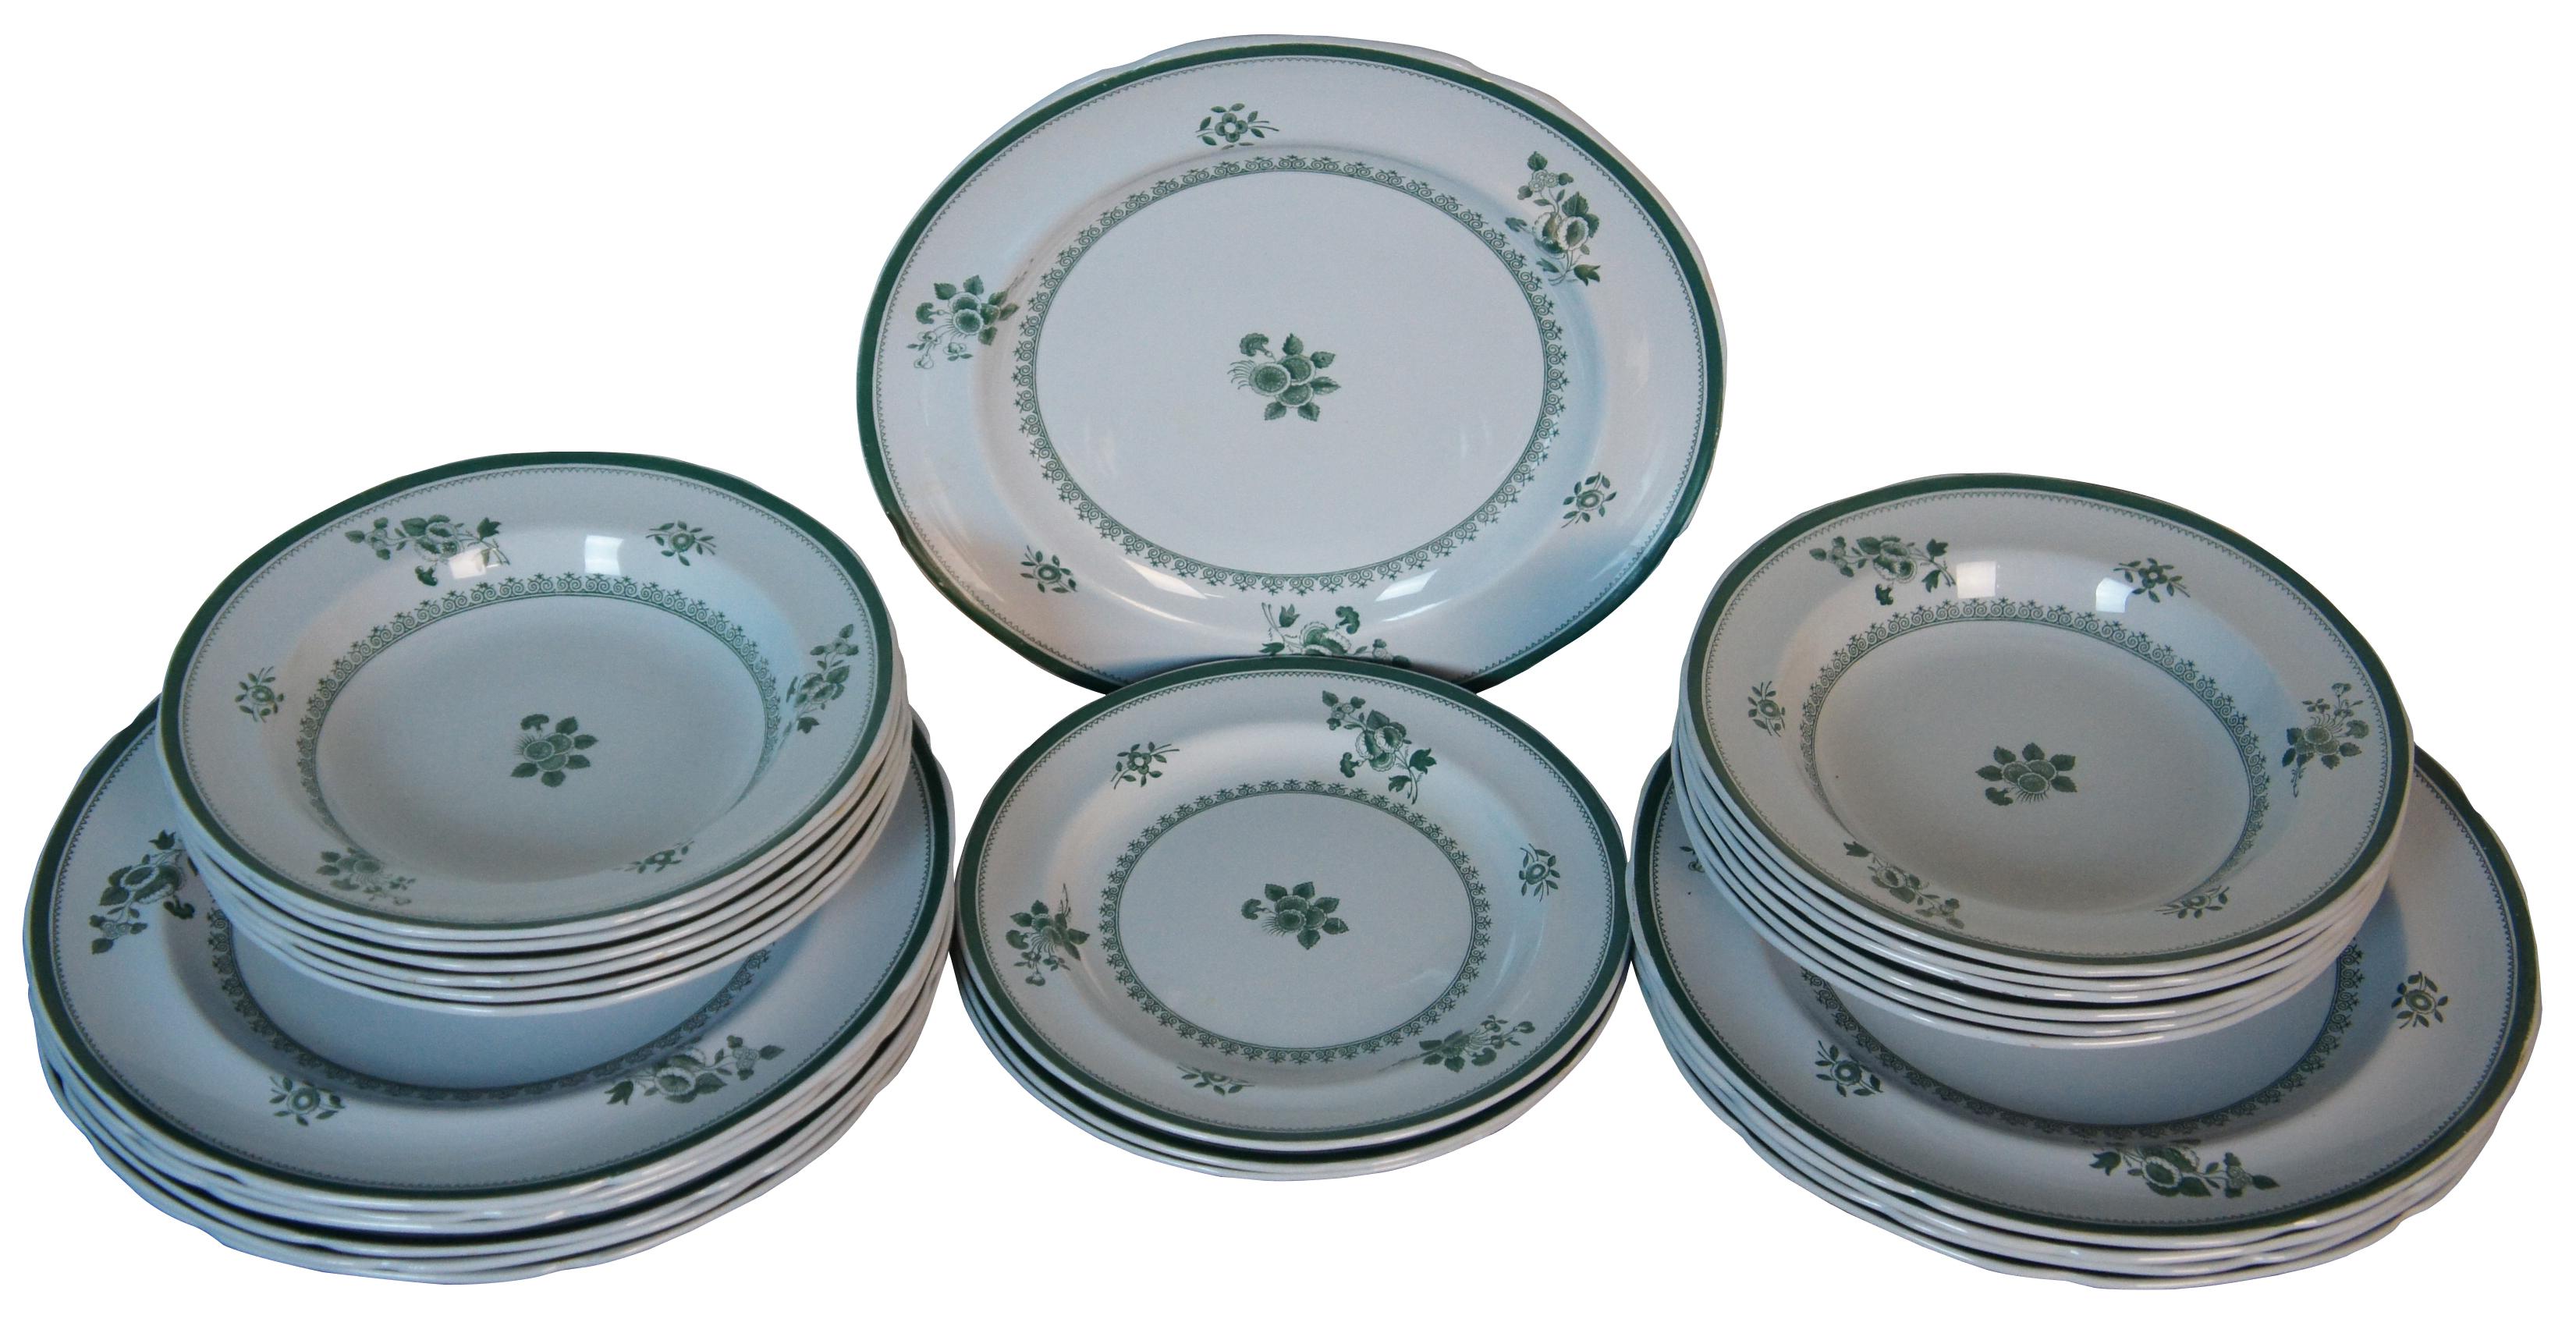 26 pièces de vaisselle en pierre fine Copeland Spode vintage dans le motif vert Gloucester.

12 bols à soupe - 8